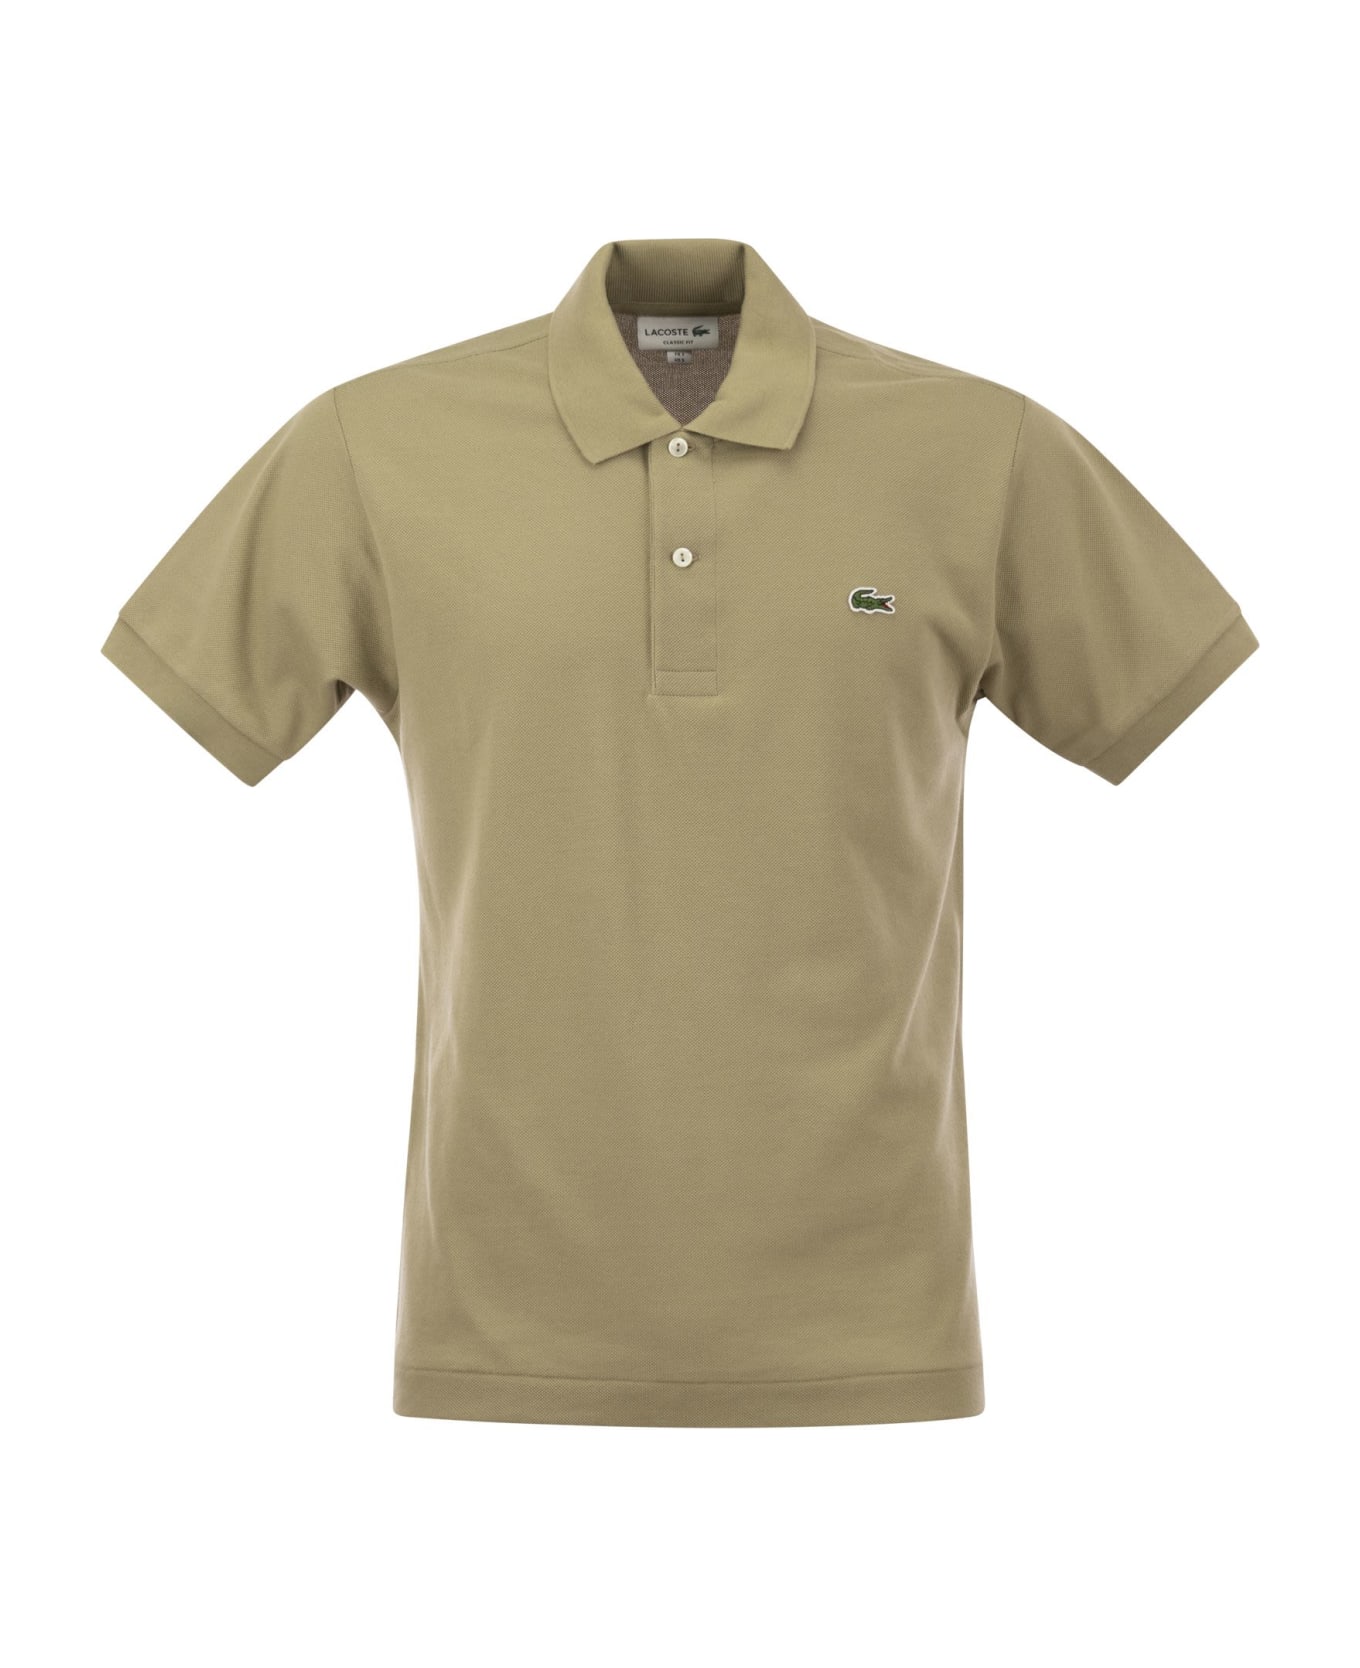 Lacoste Classic Fit Cotton Pique Polo Shirt - Beige